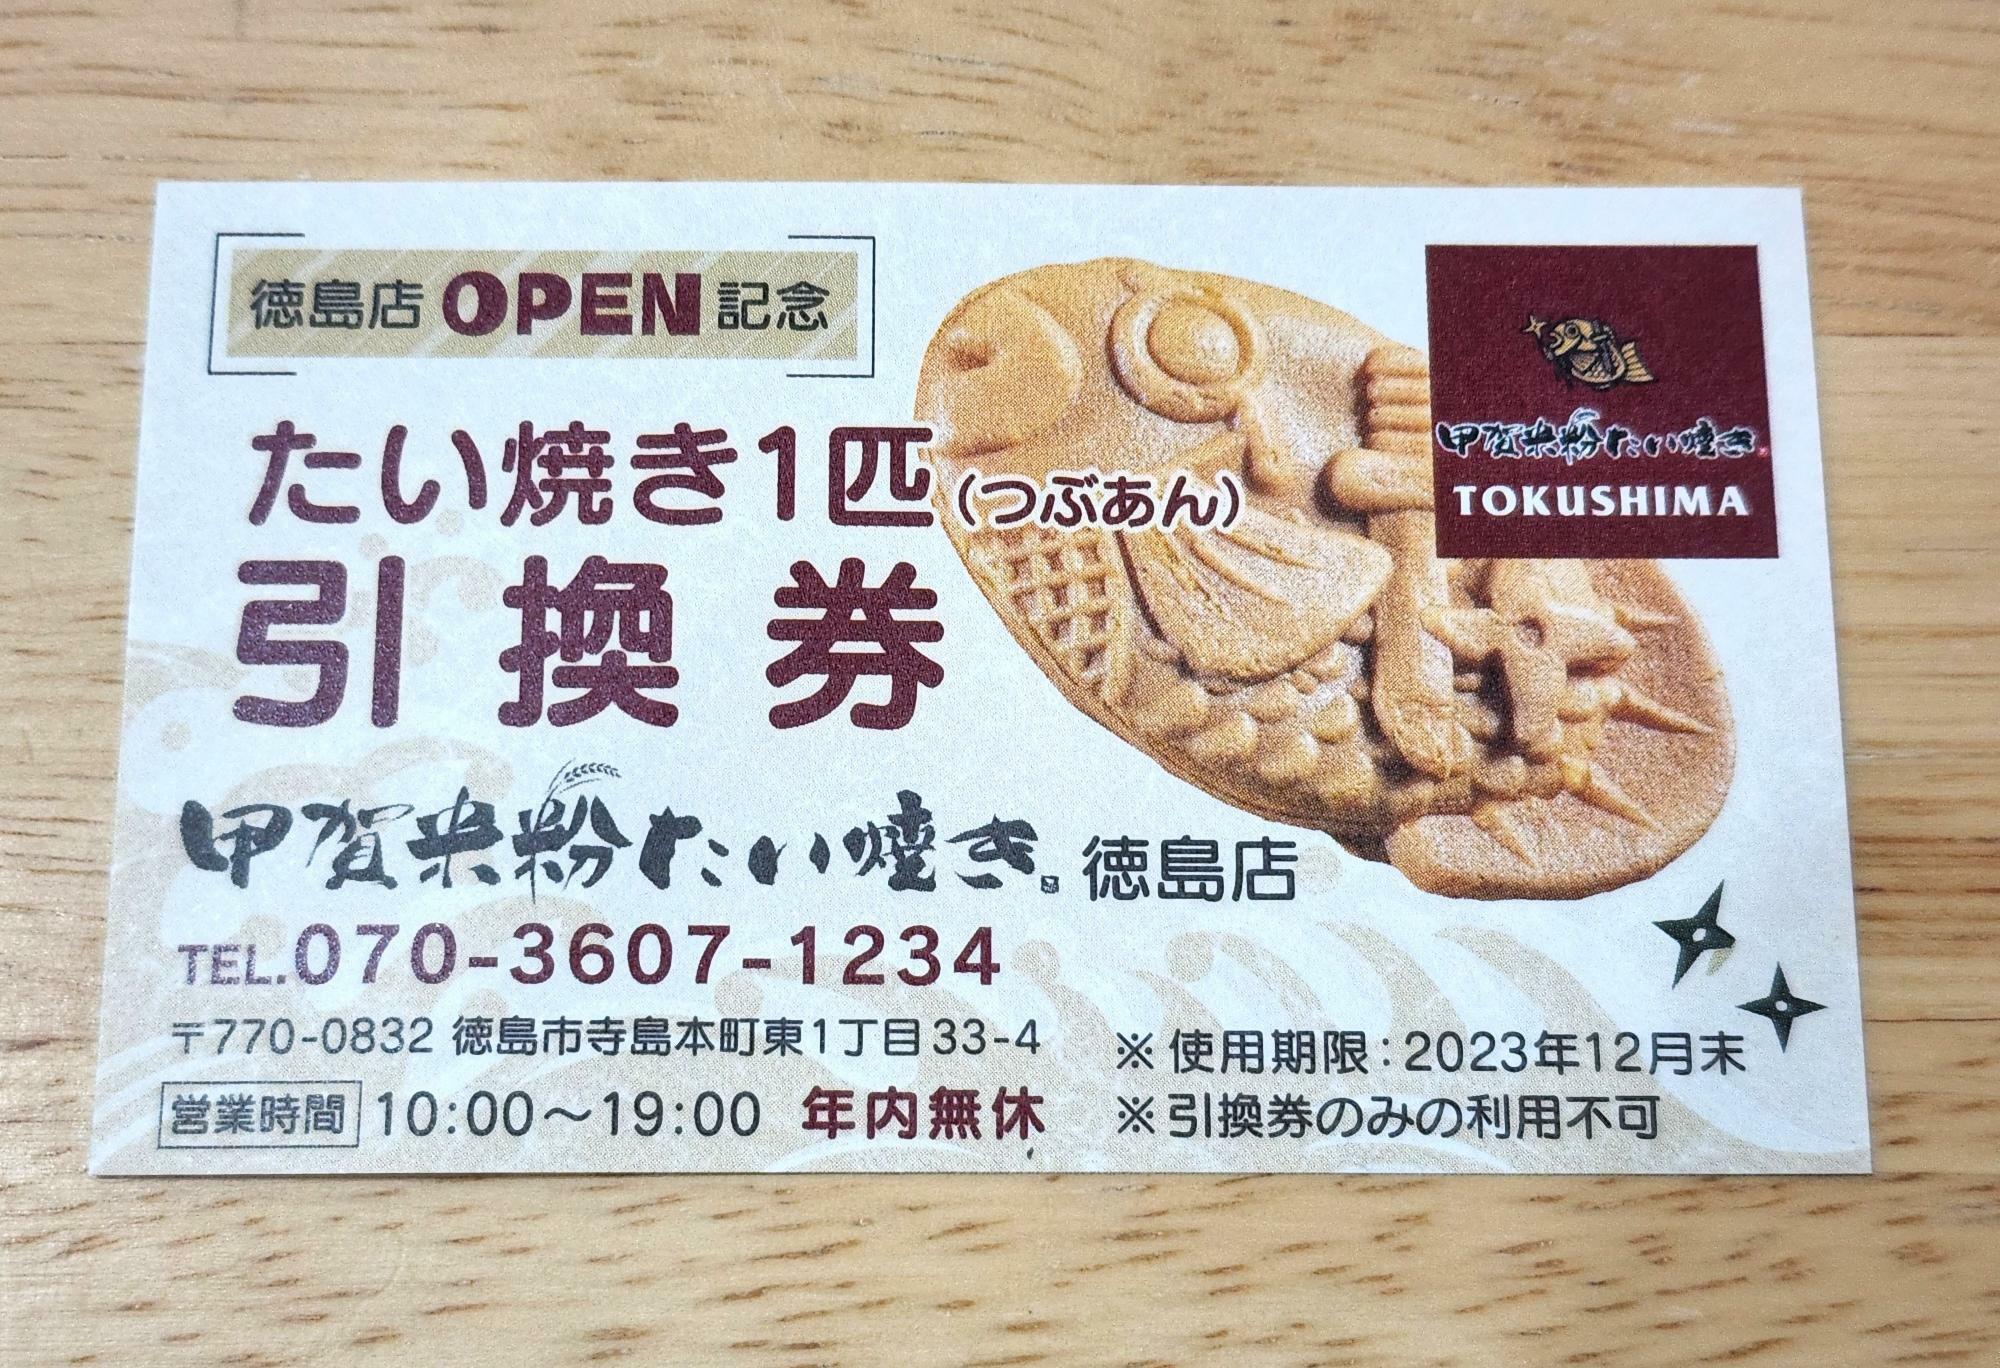 「甲賀米粉たい焼き徳島店」でいただいた引換券。